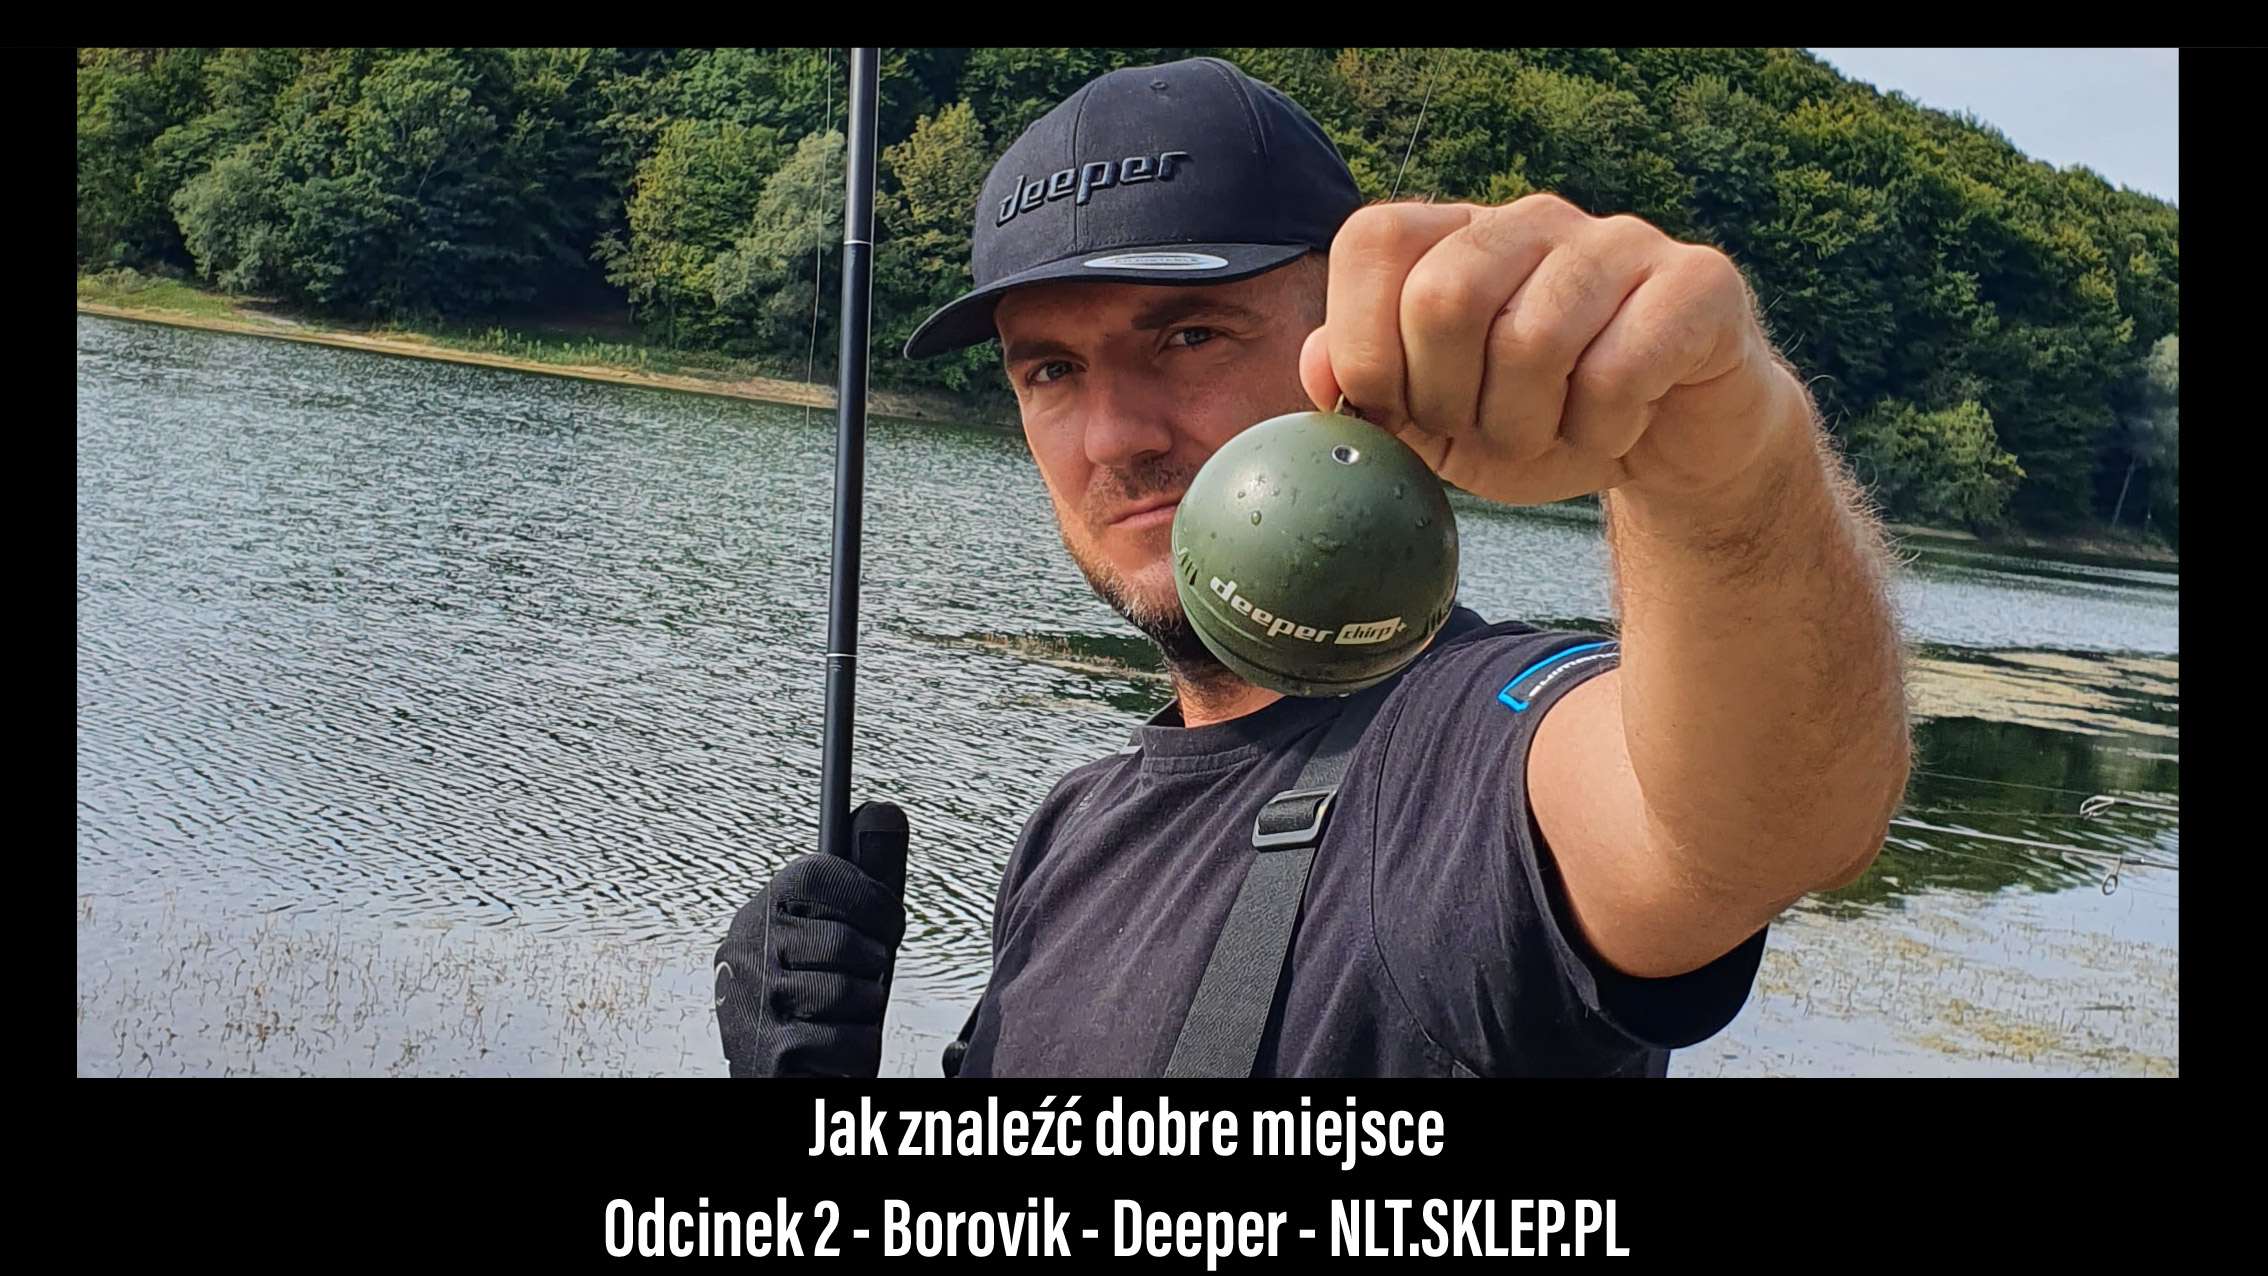 Jak znaleźć dobre miejsce - odcinek 2 - Borovik - Deeper - NLT.SKLEP.PL